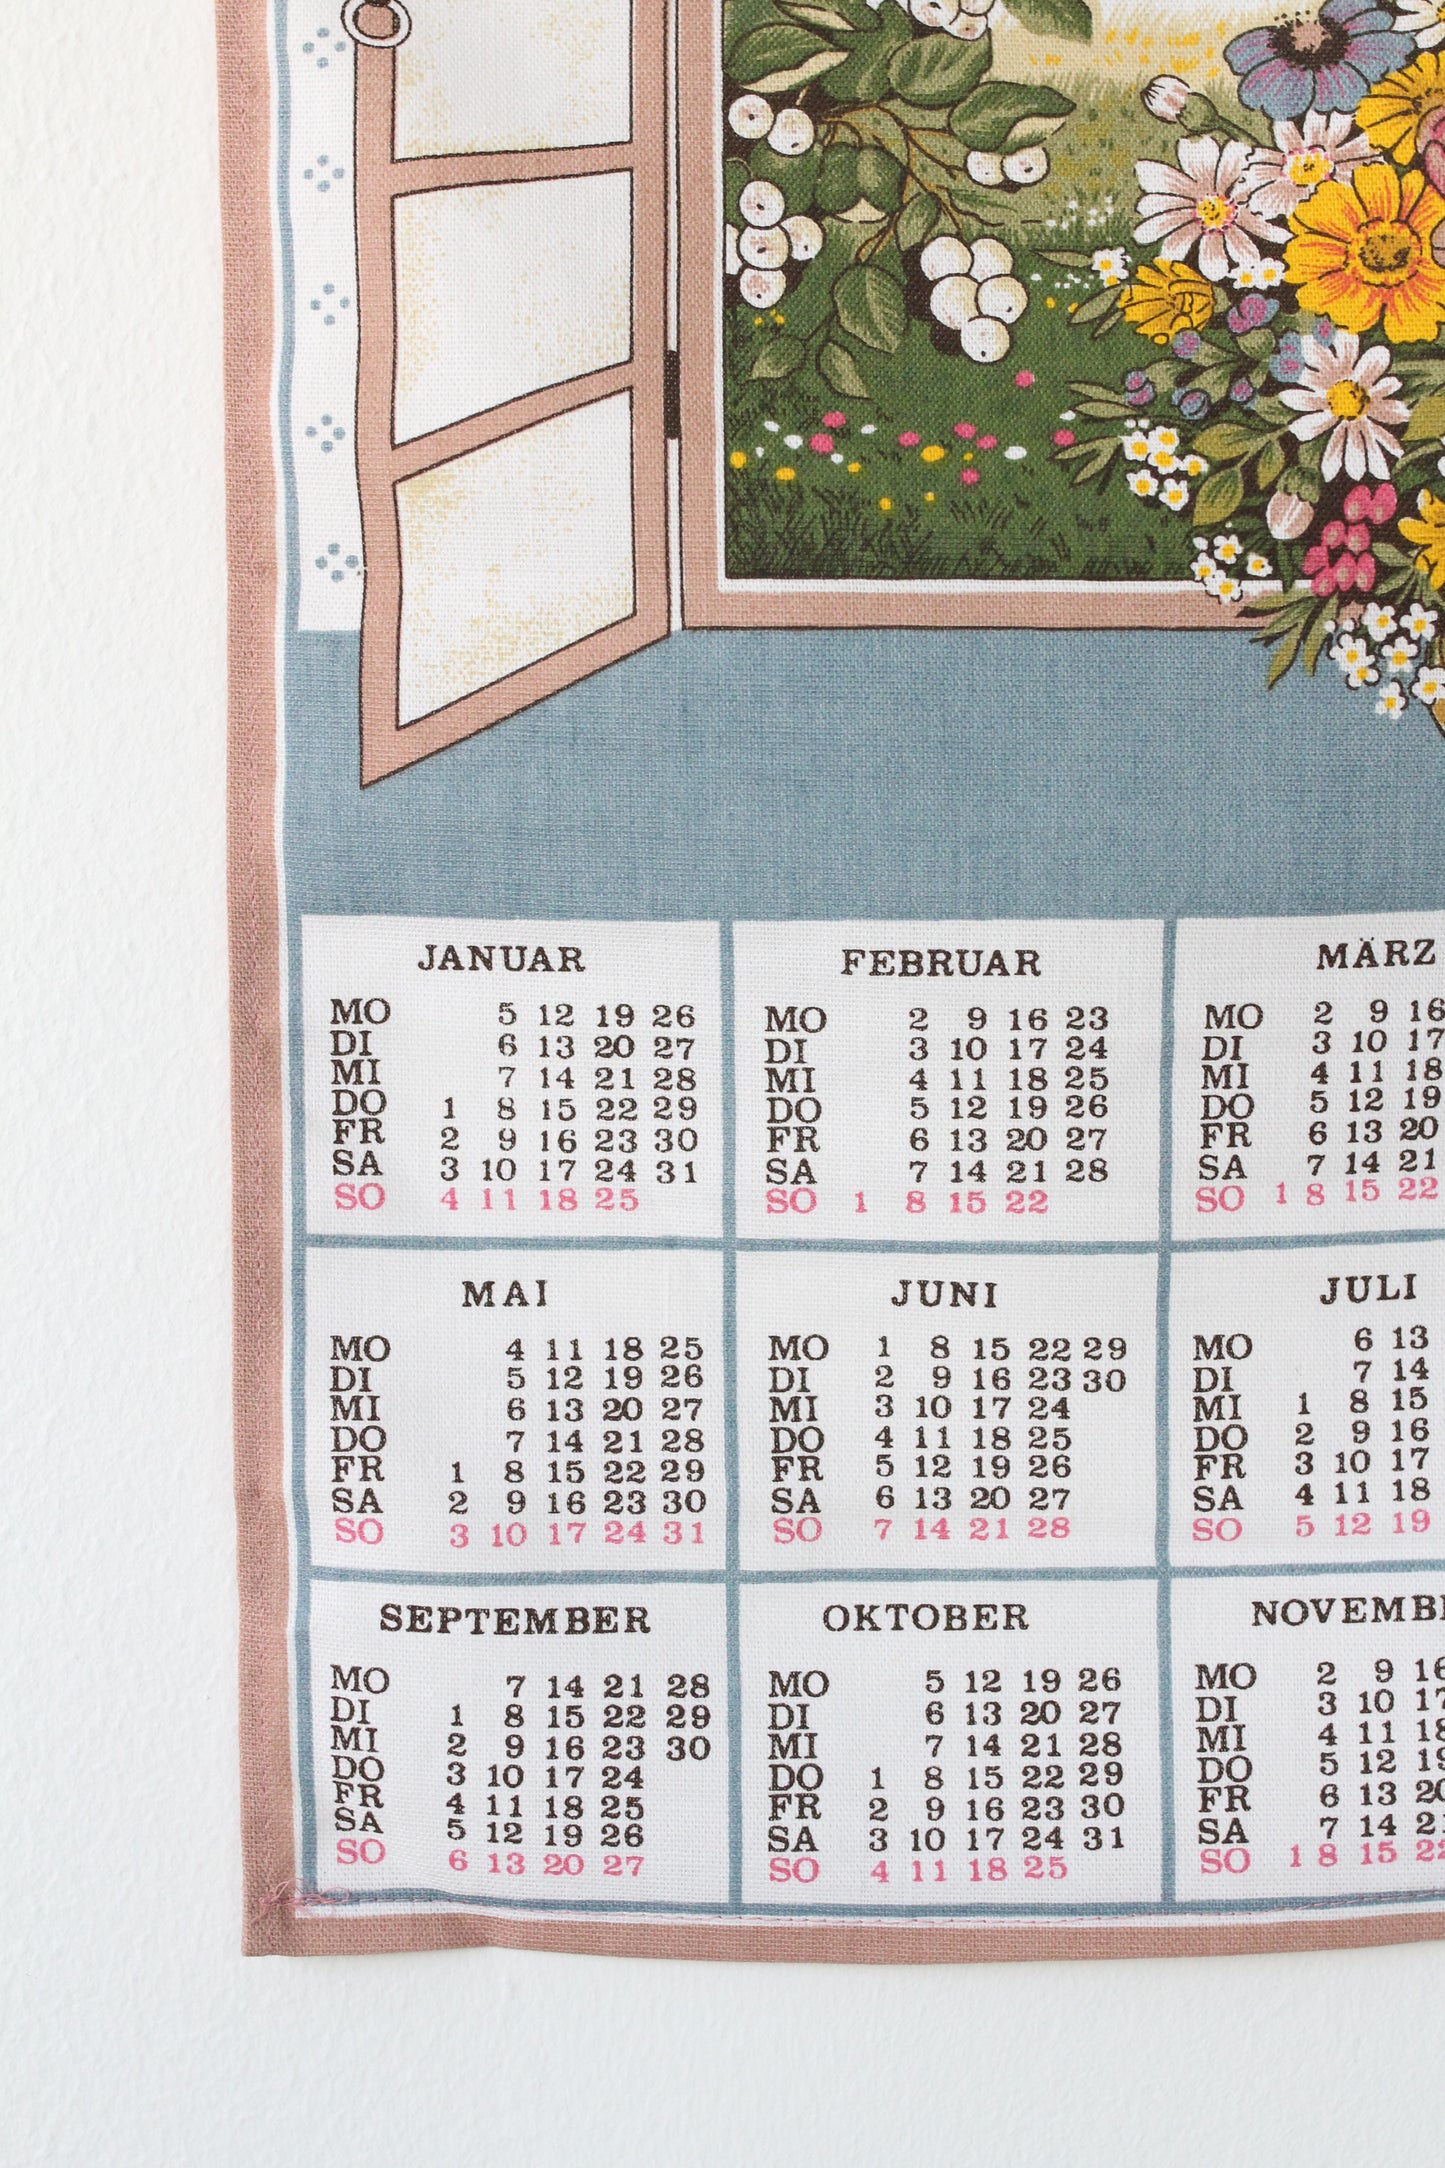 Vintažinis sienos kalendorius "Langas į 1987"